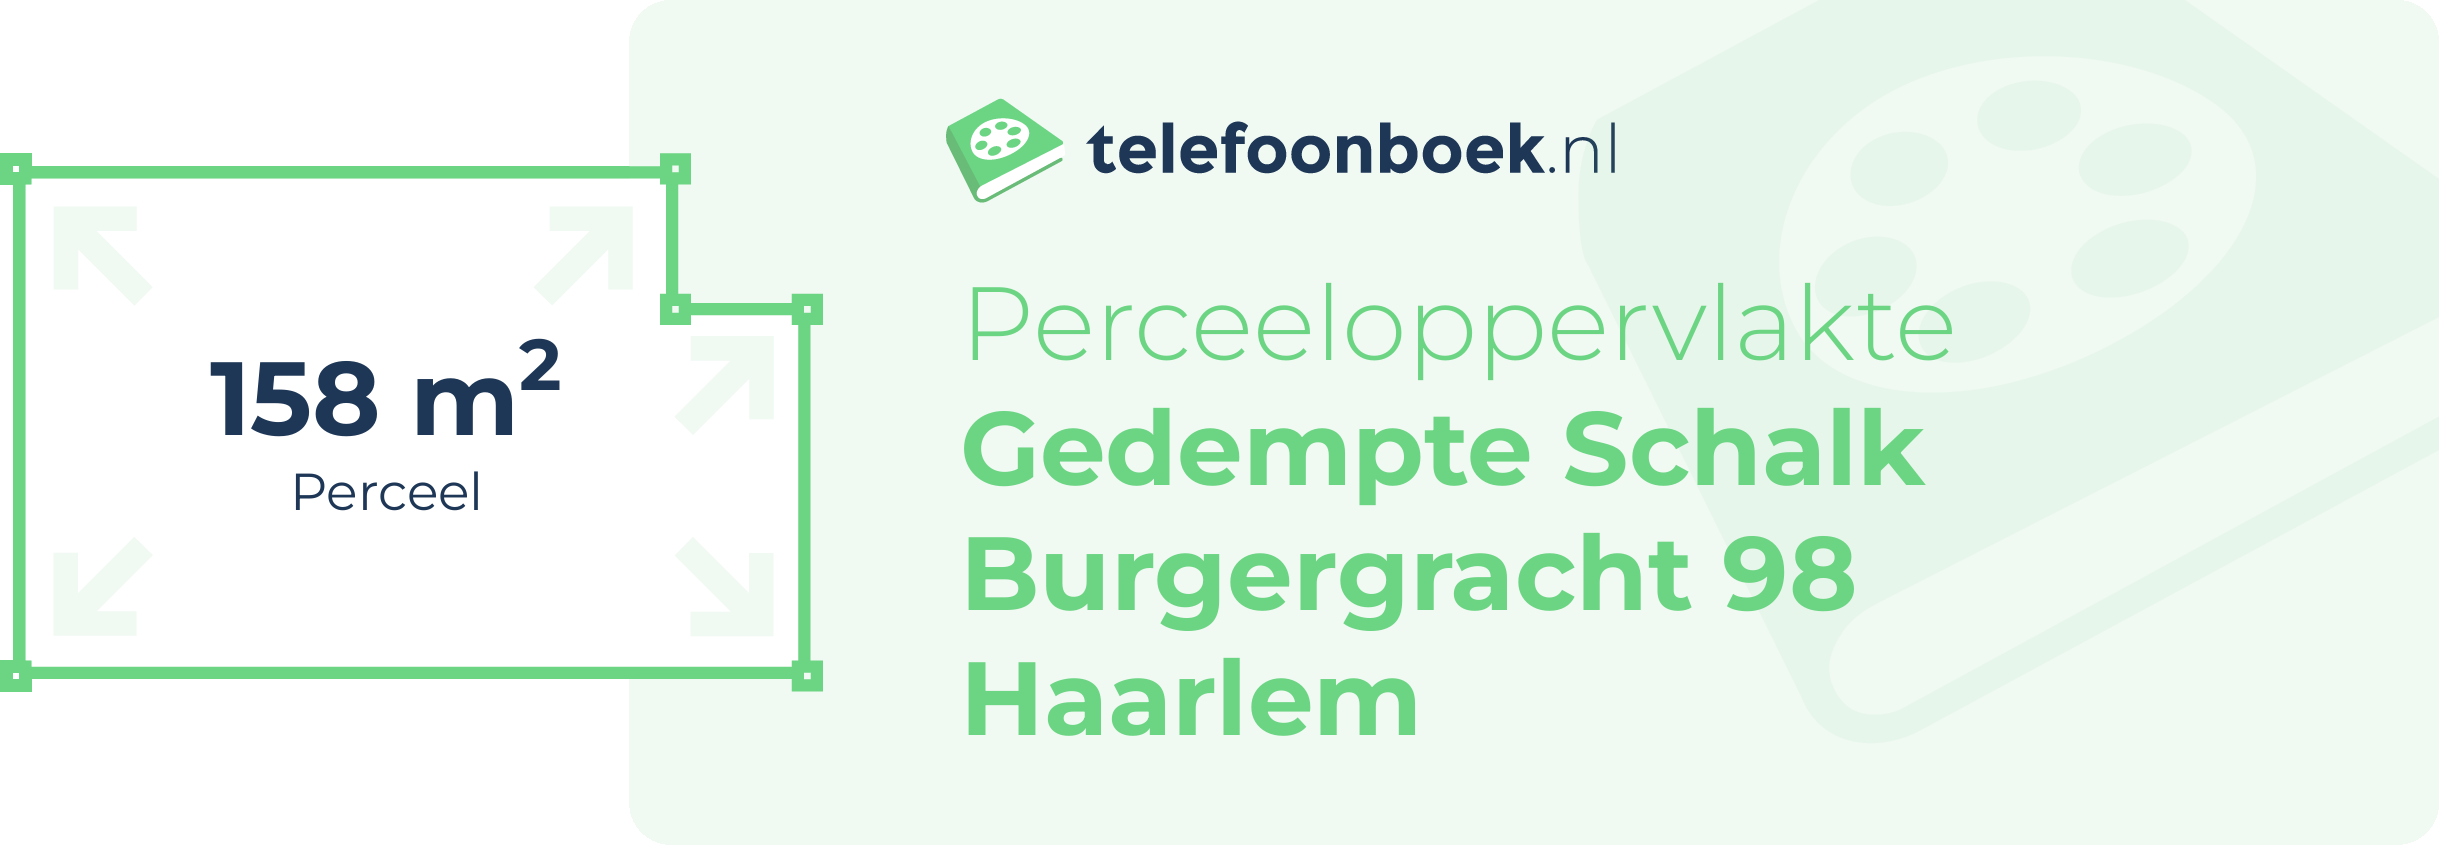 Perceeloppervlakte Gedempte Schalk Burgergracht 98 Haarlem